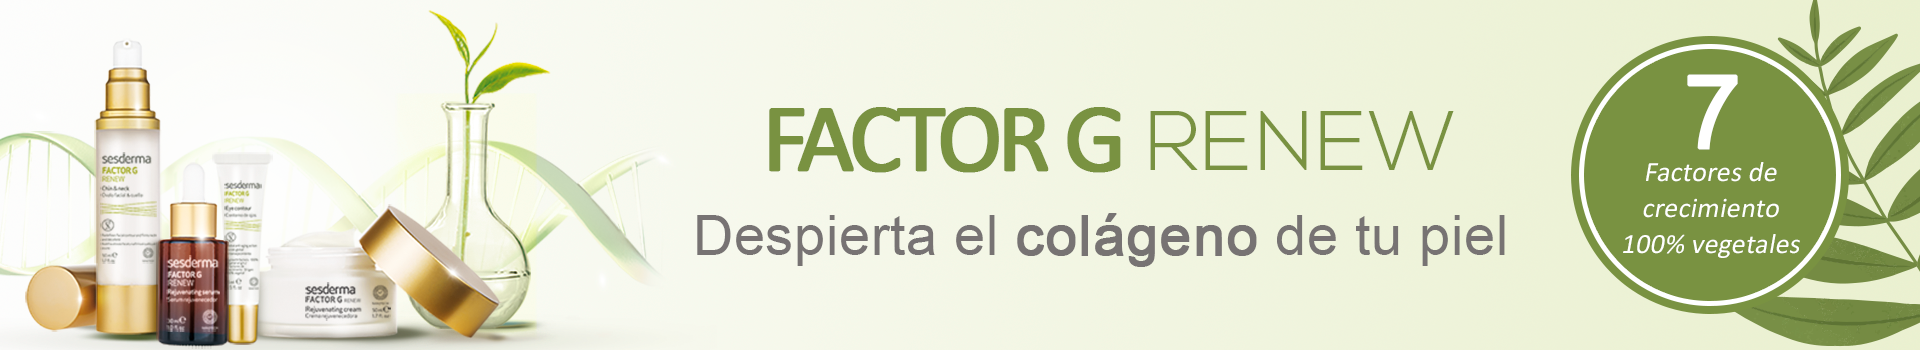 factor g